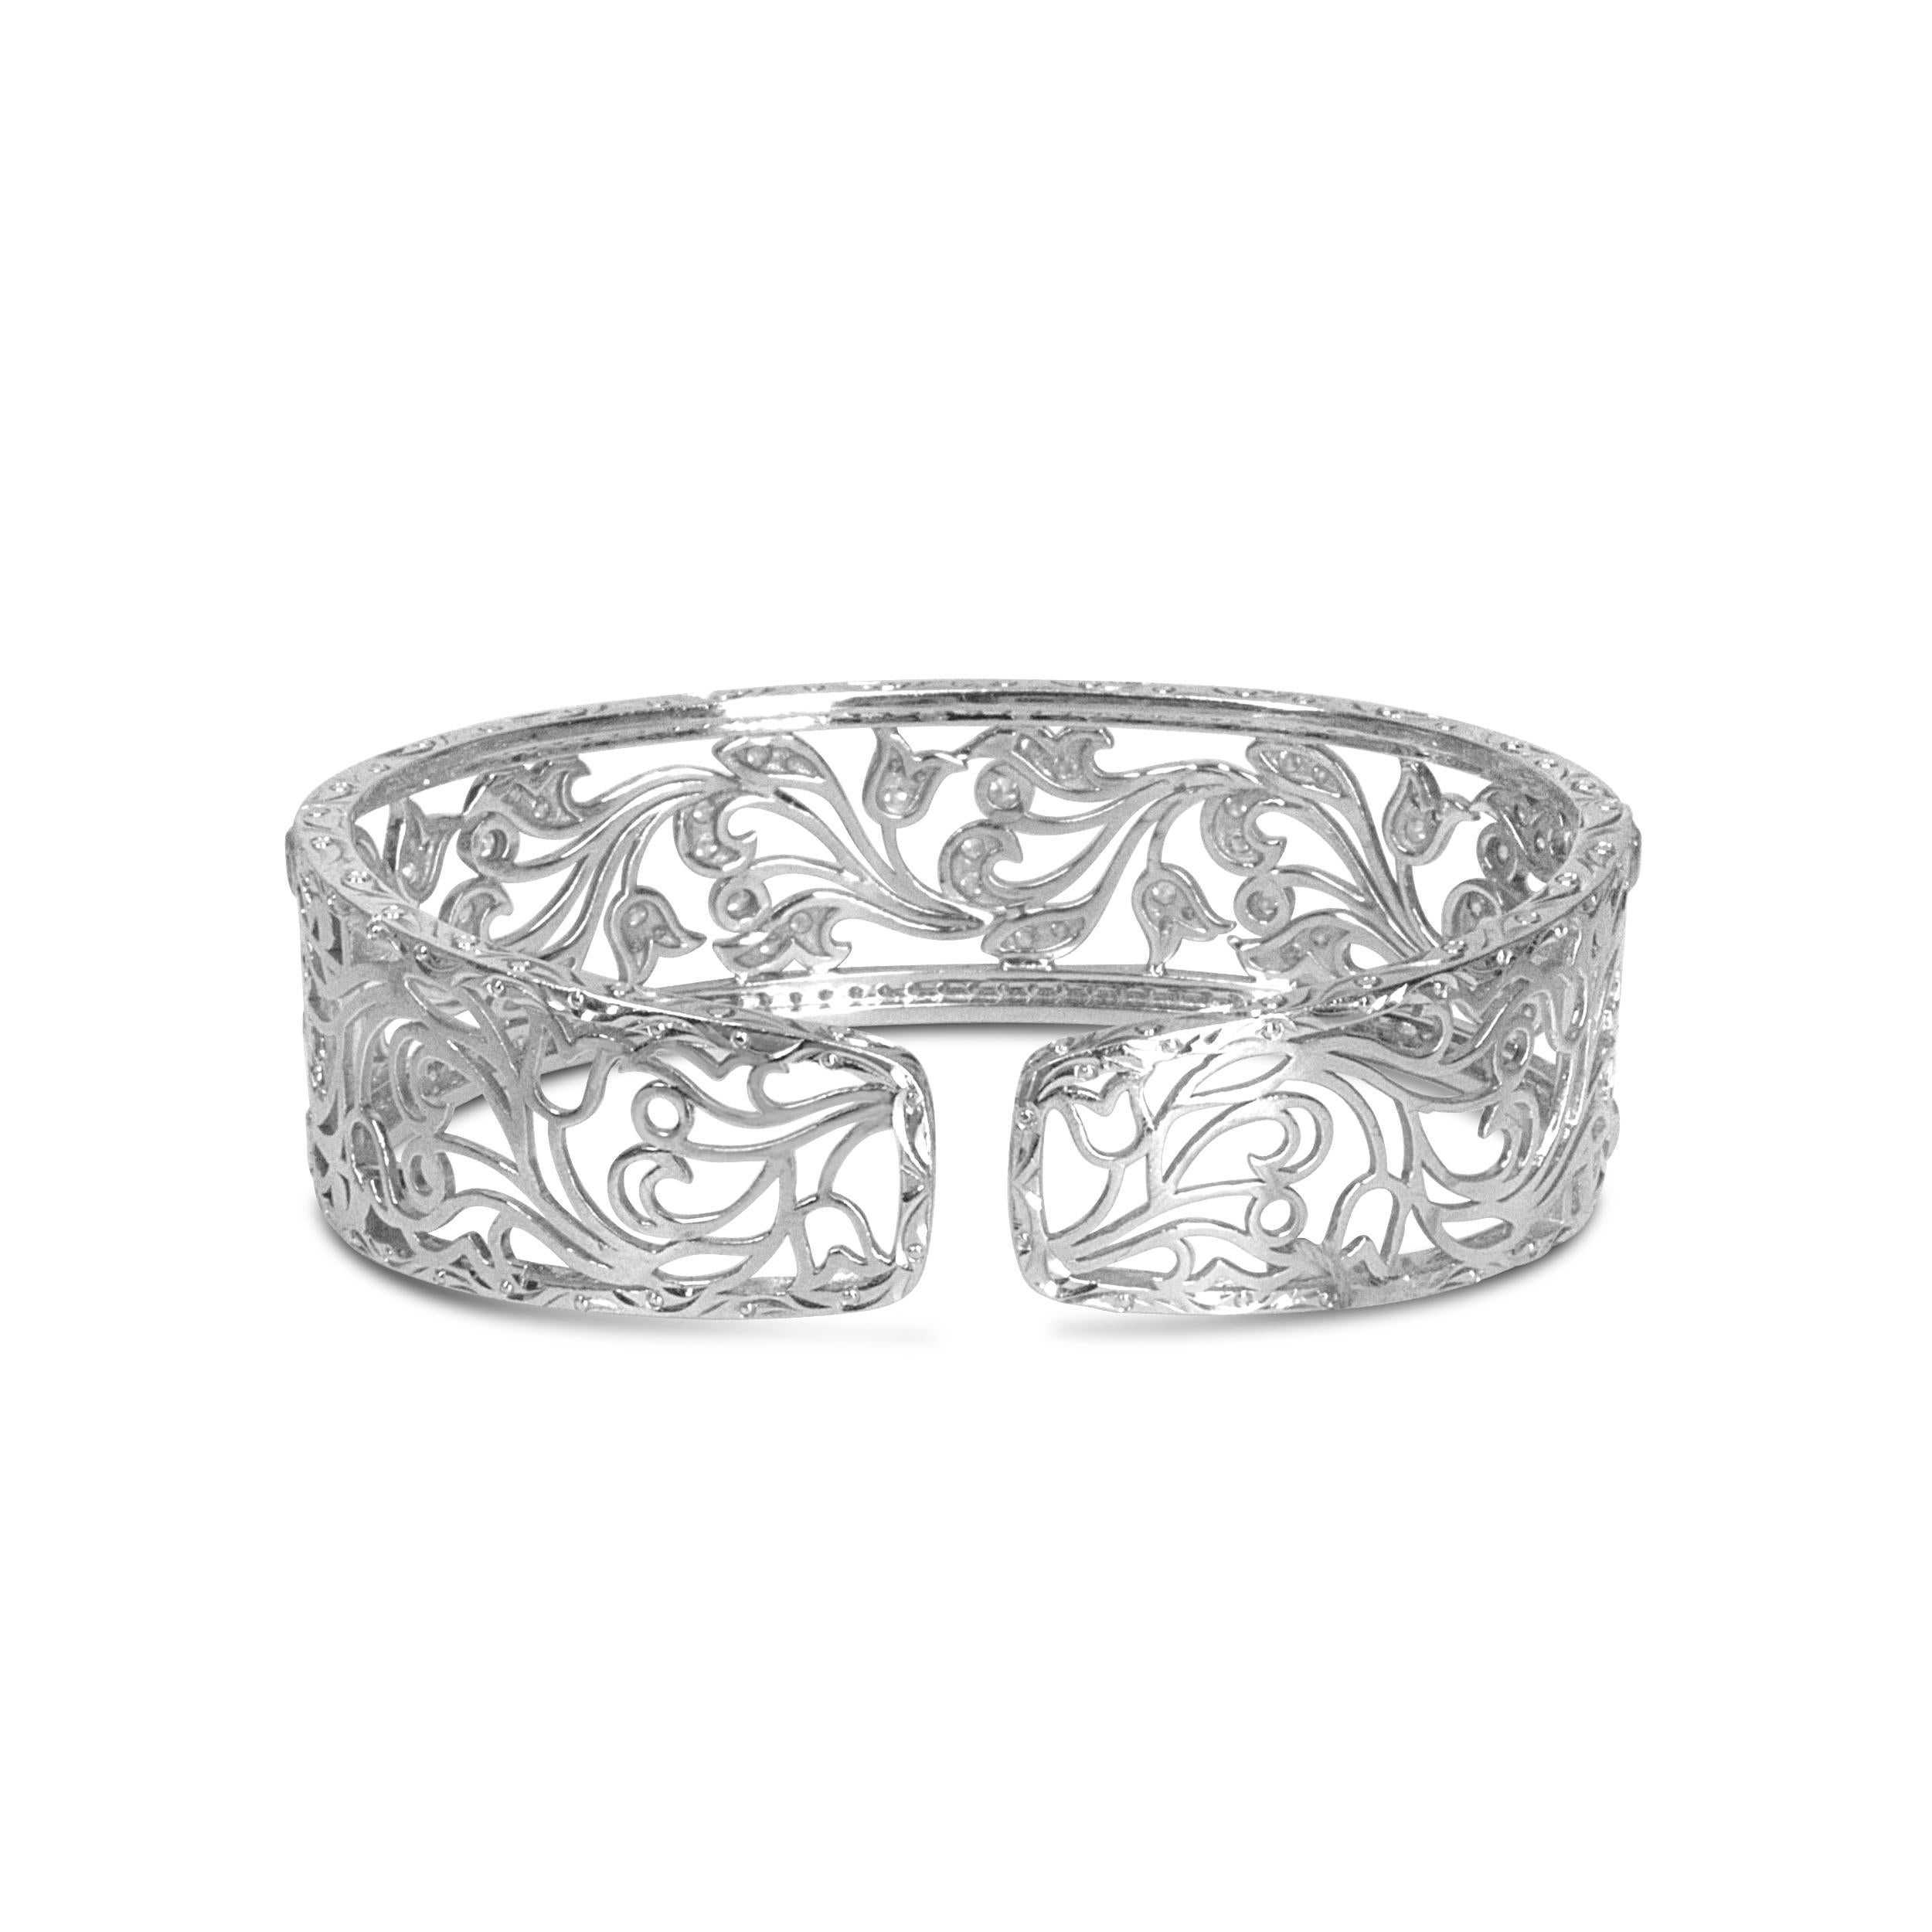 Ce resplendissant bracelet ajouré est un chef-d'œuvre avec 164 diamants blancs ronds en serti pavé qui rehaussent l'élégance. Un magnifique tourbillon floral filigrané ajouré rend ce bijou éblouissant, et il rayonne d'un éclat lumineux avec 3 1/4